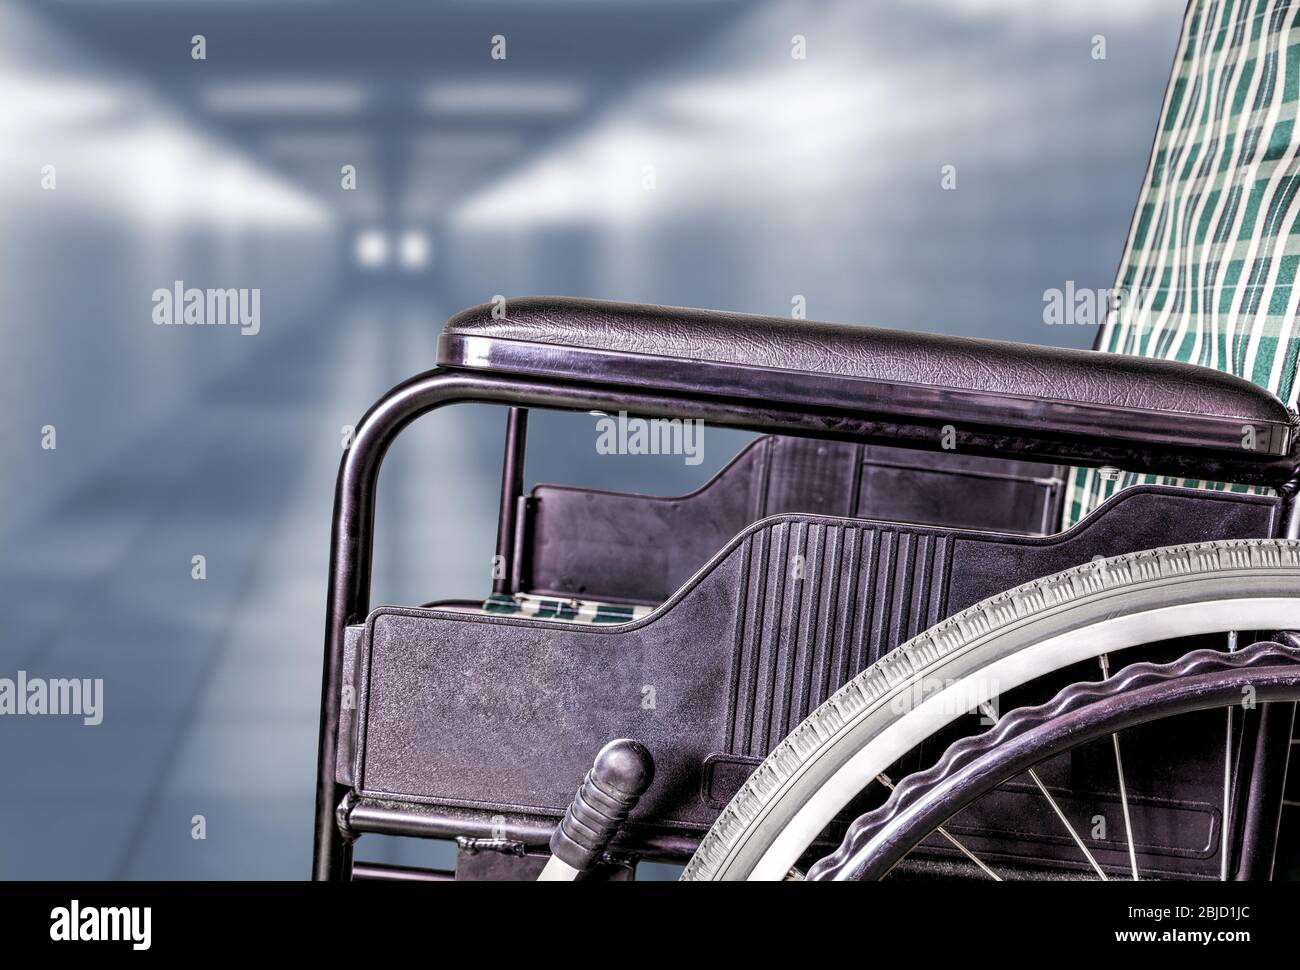 Leerer Rollstuhl im Flur des Krankenhauses oder Altenpflegeheims mit Kopierplatz. Konzept der Krankheit, Einsamkeit, Vernachlässigung, Isolation durch pa Stockfoto